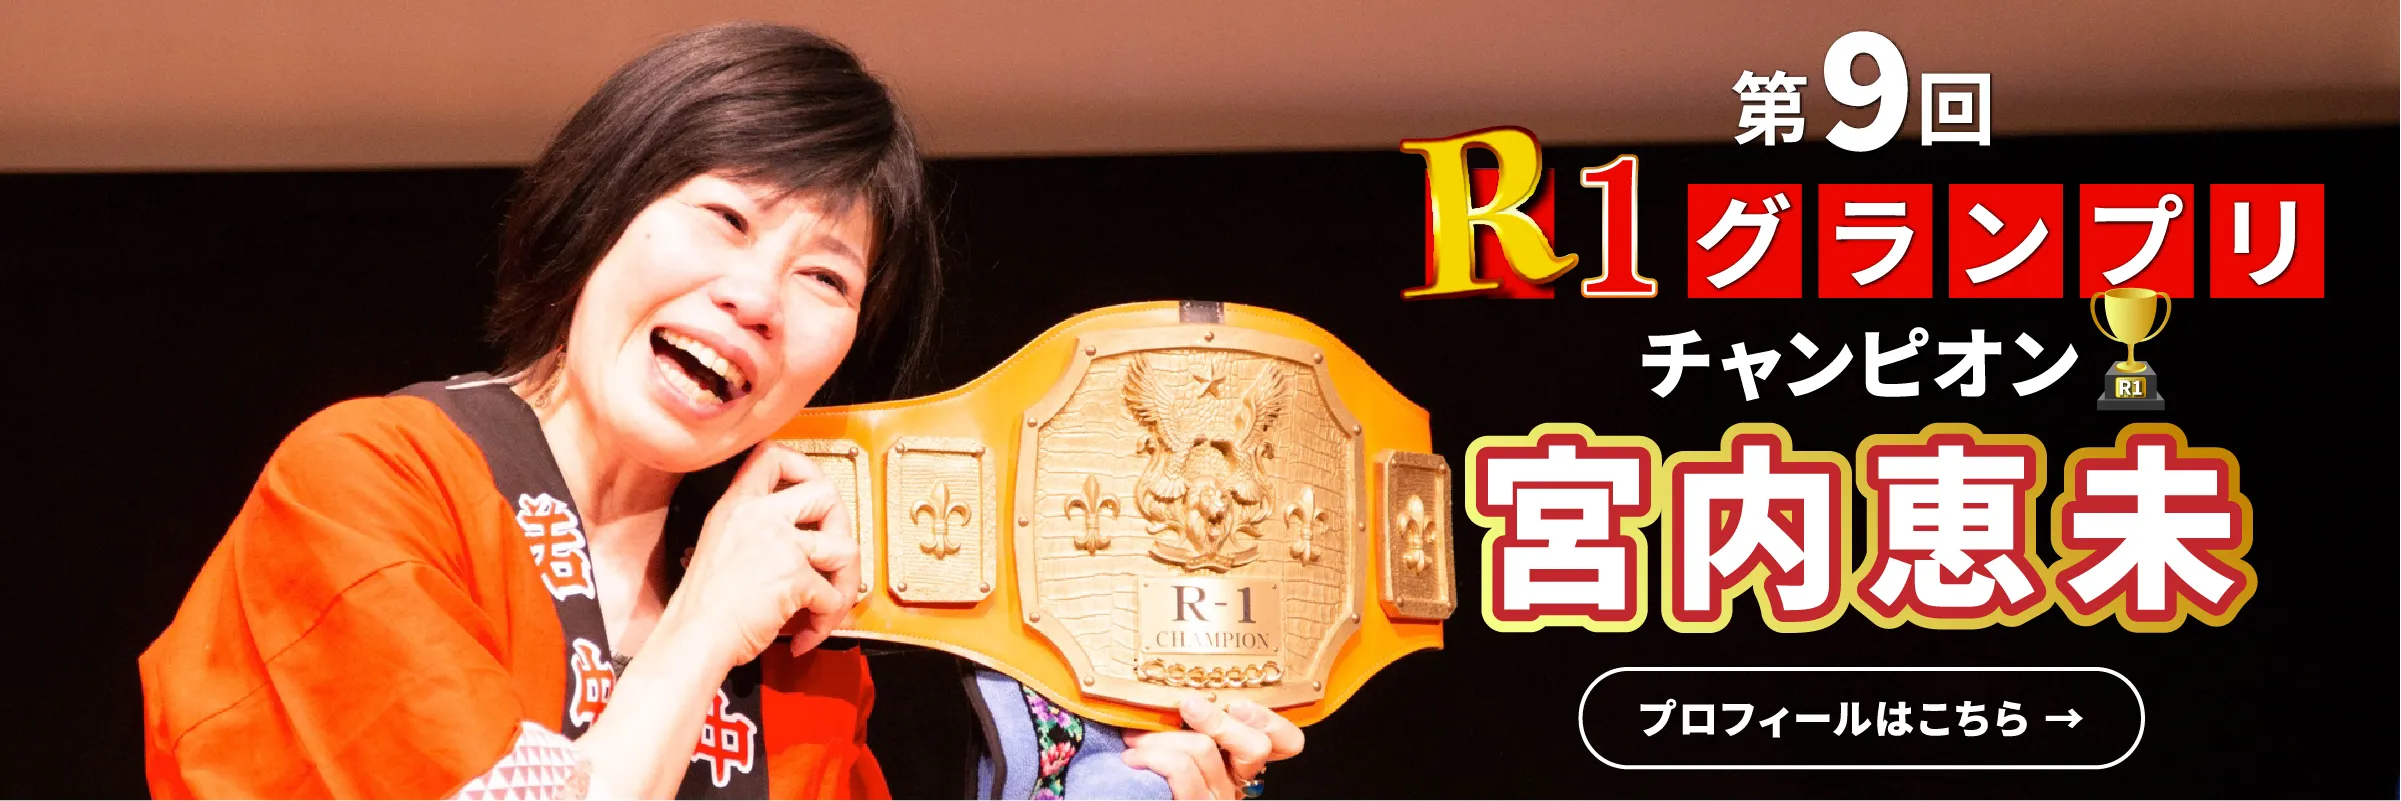 第9回R1グランプリチャンピオン 宮内恵美